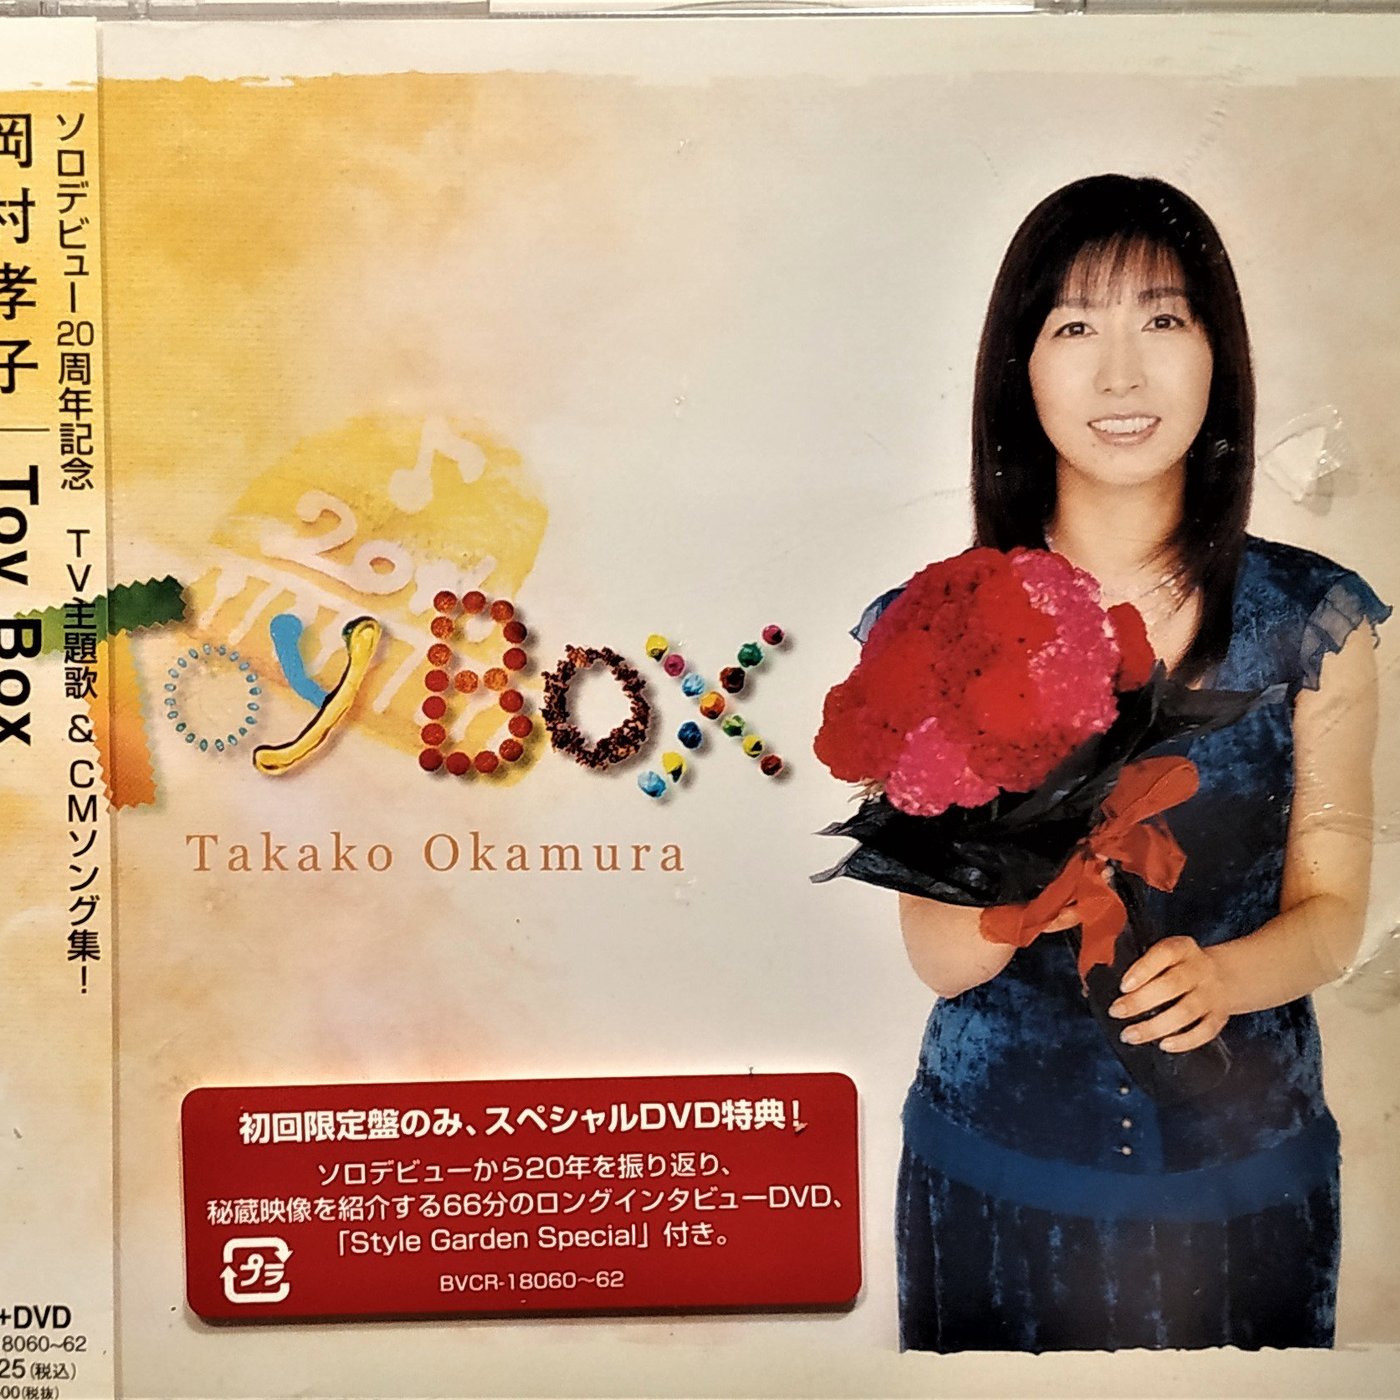 最新の激安 テレビ主題歌 Cmソング集 初回限定盤 Dvd付 Box ソロデビュー周年記念 中古 Toy アニメ